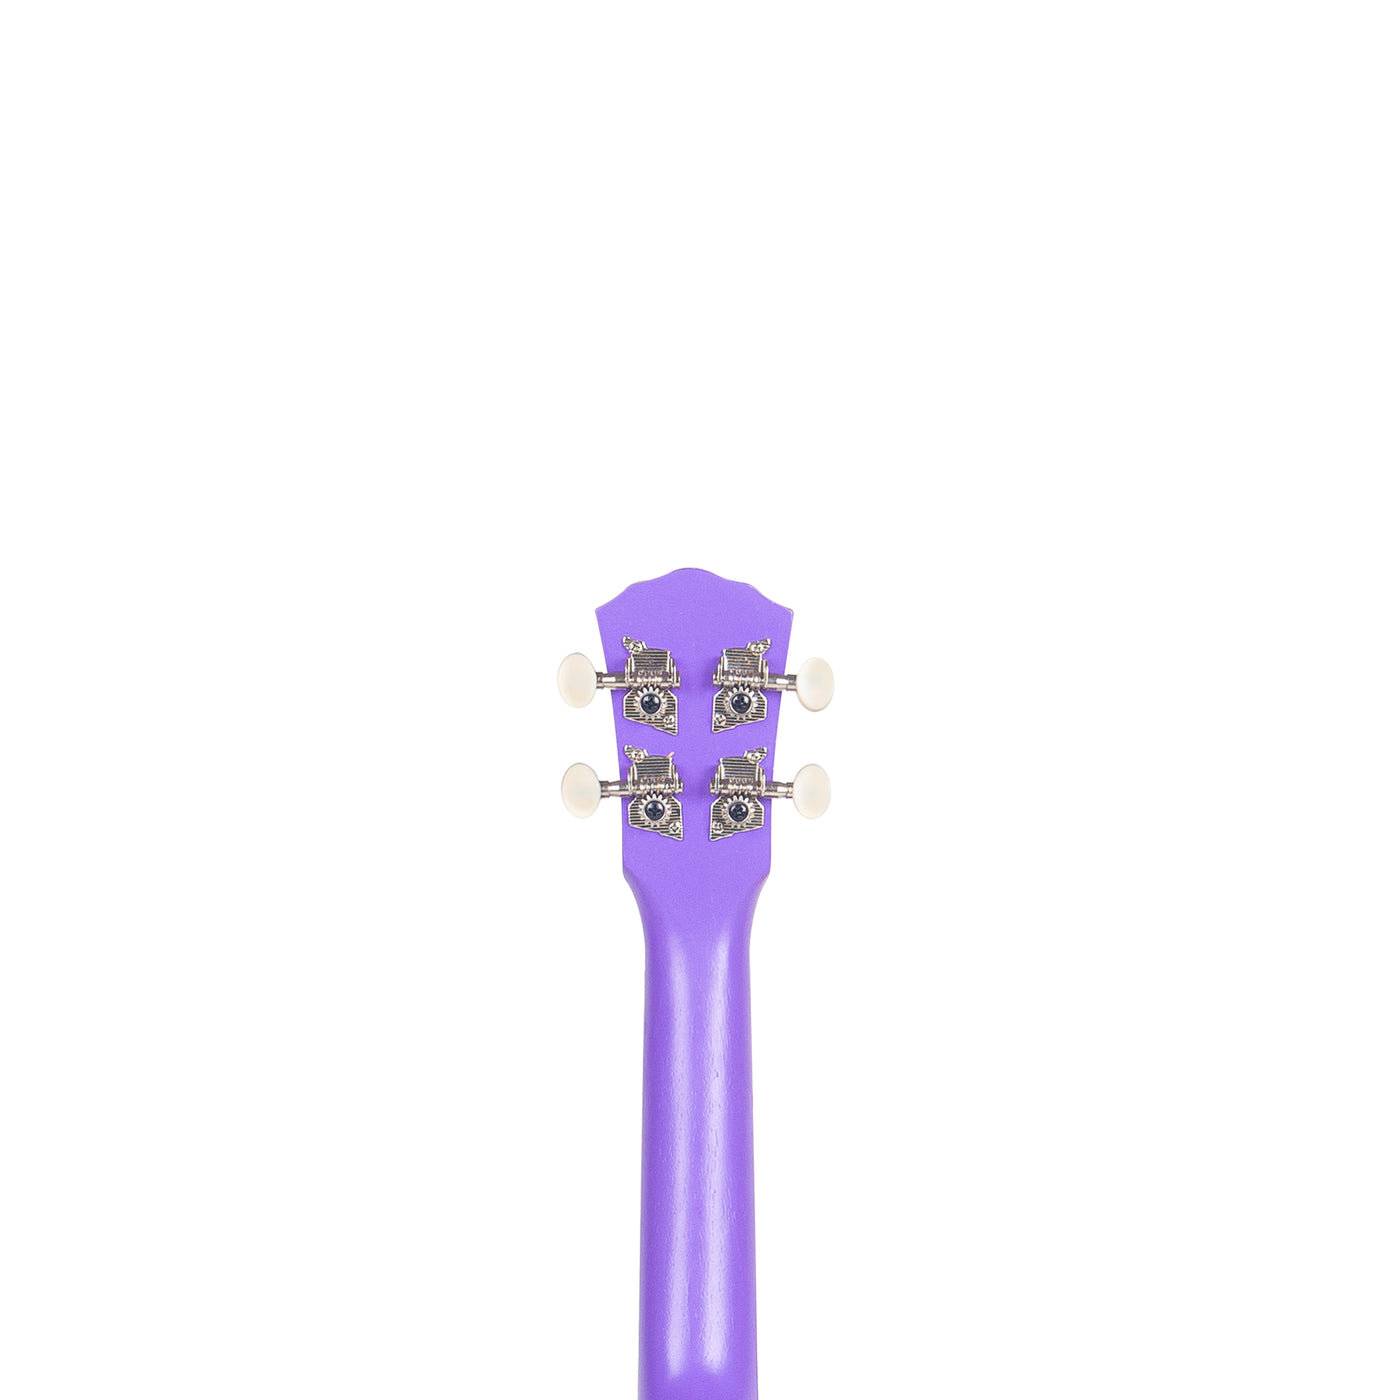 Ukulele Soprano Mandalika Purple UKV2-21 PP